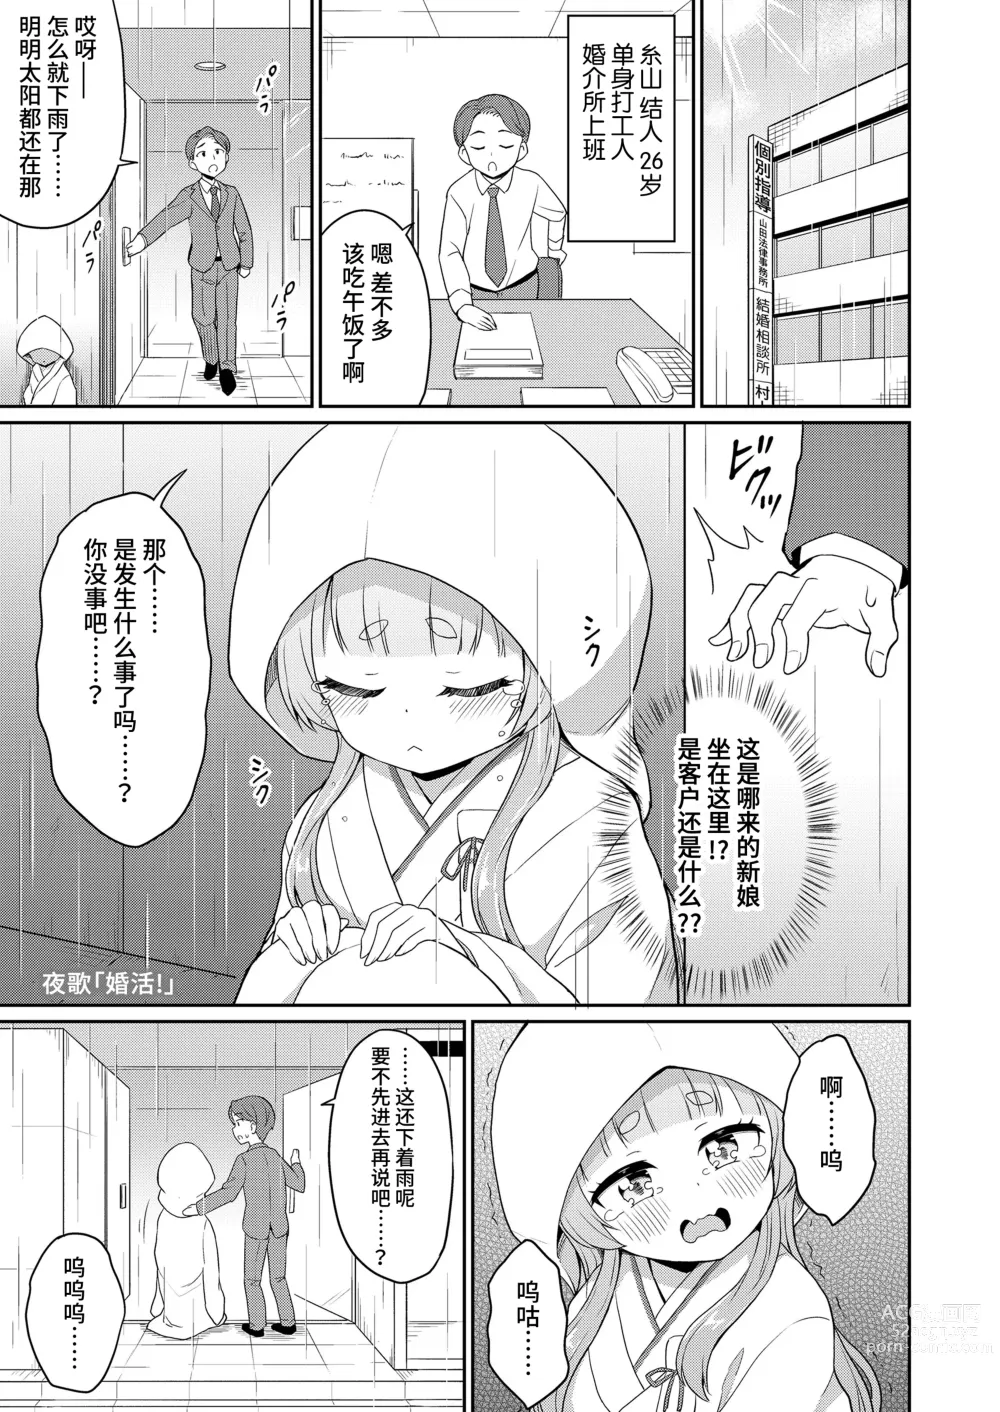 Page 1 of manga 婚活 1-2